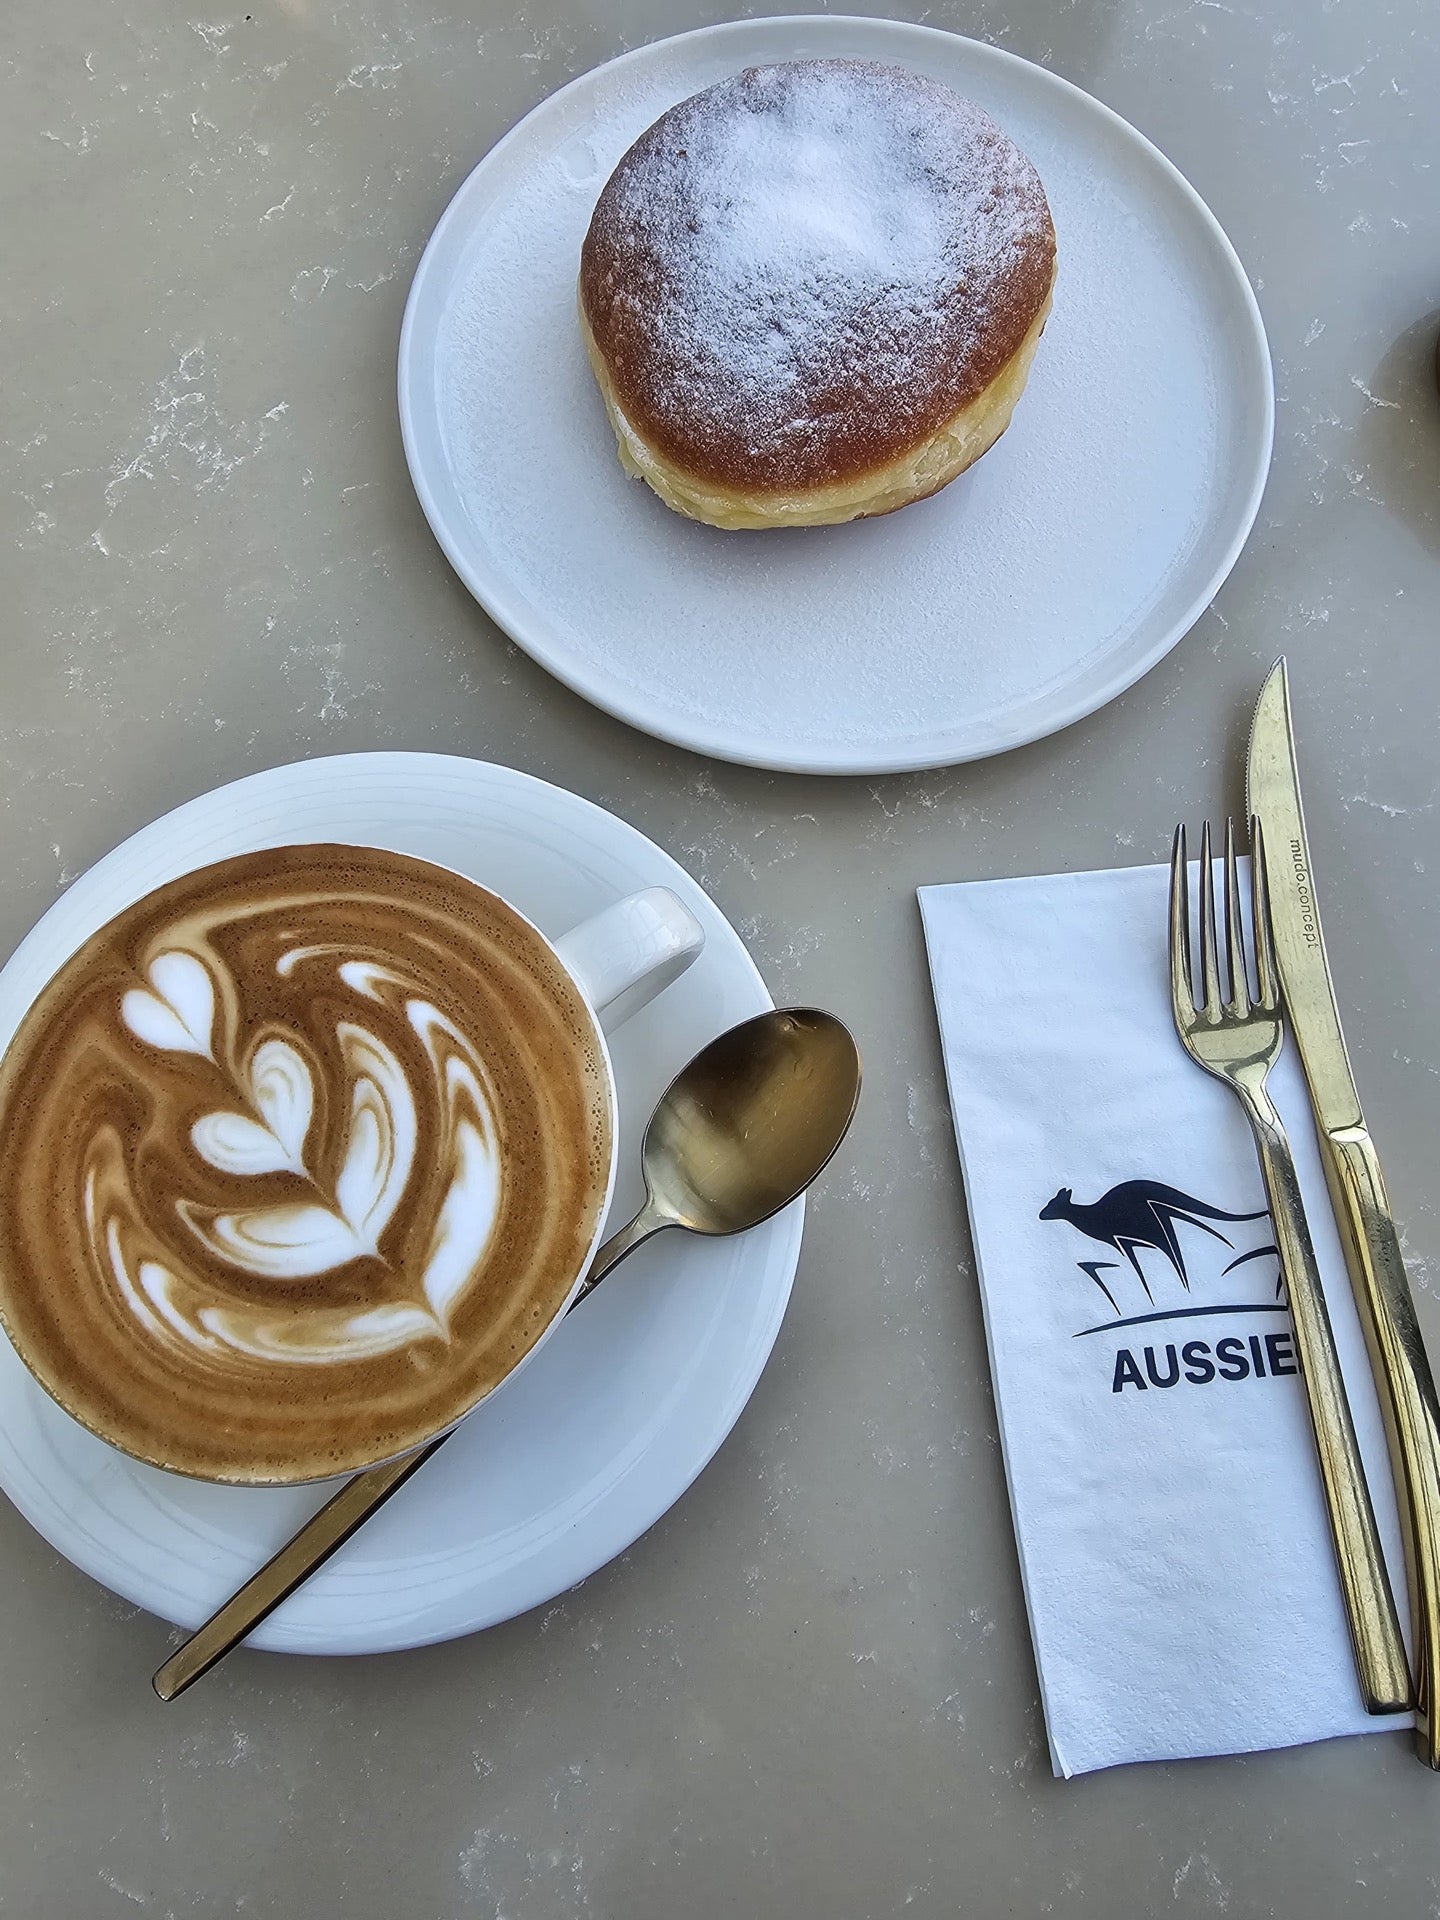 Aussie Cafe Lara